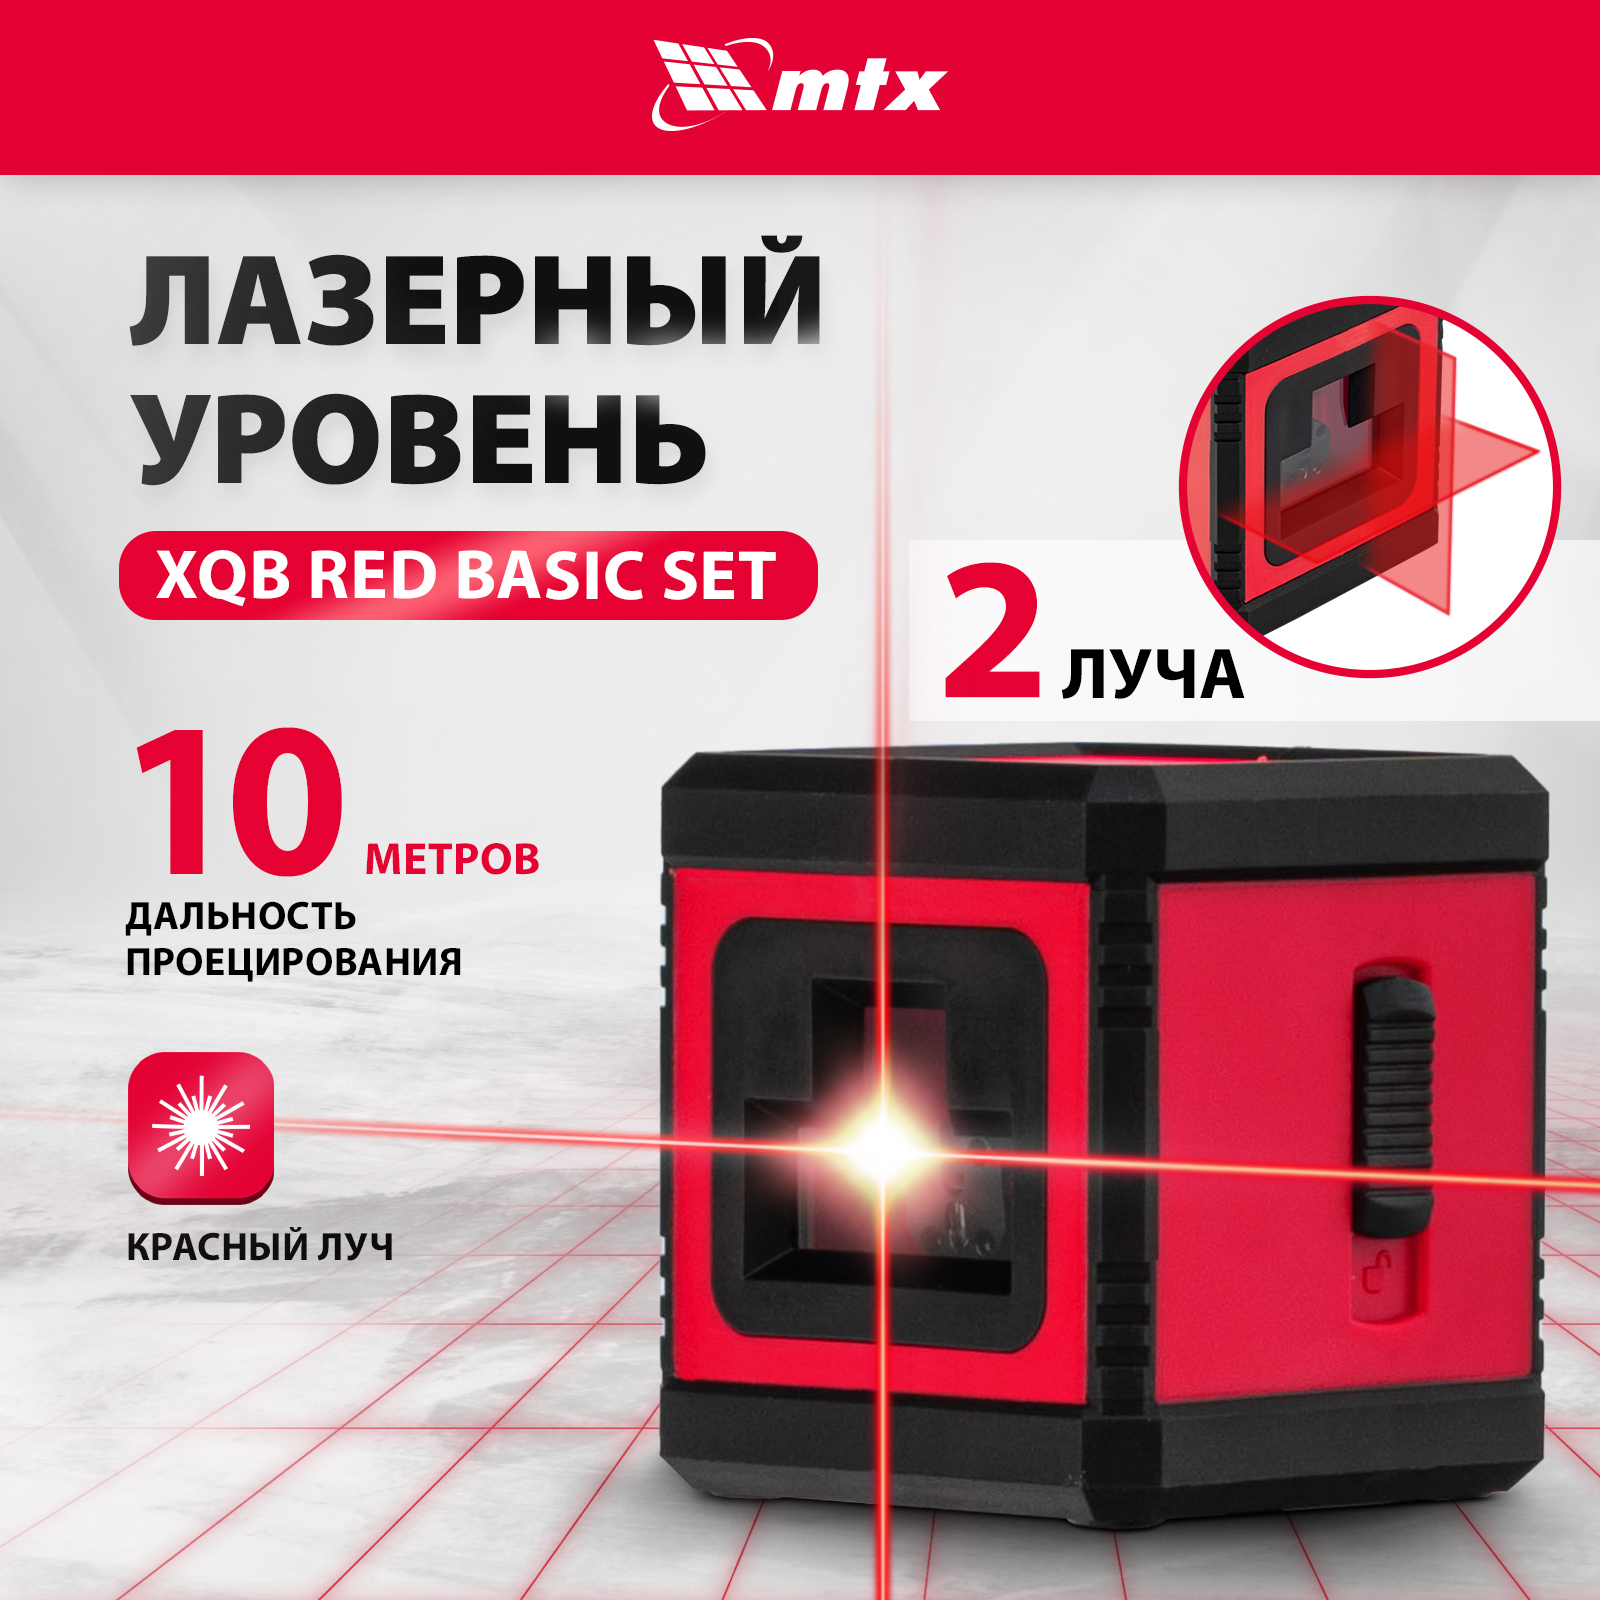 zitrek ll1v1h 2 линии красный луч штатив 1м 065 0177 1 Лазерный уровень MTX XQB RED Basic SET, 10 м, красный луч, батарейки, резьба 1/4